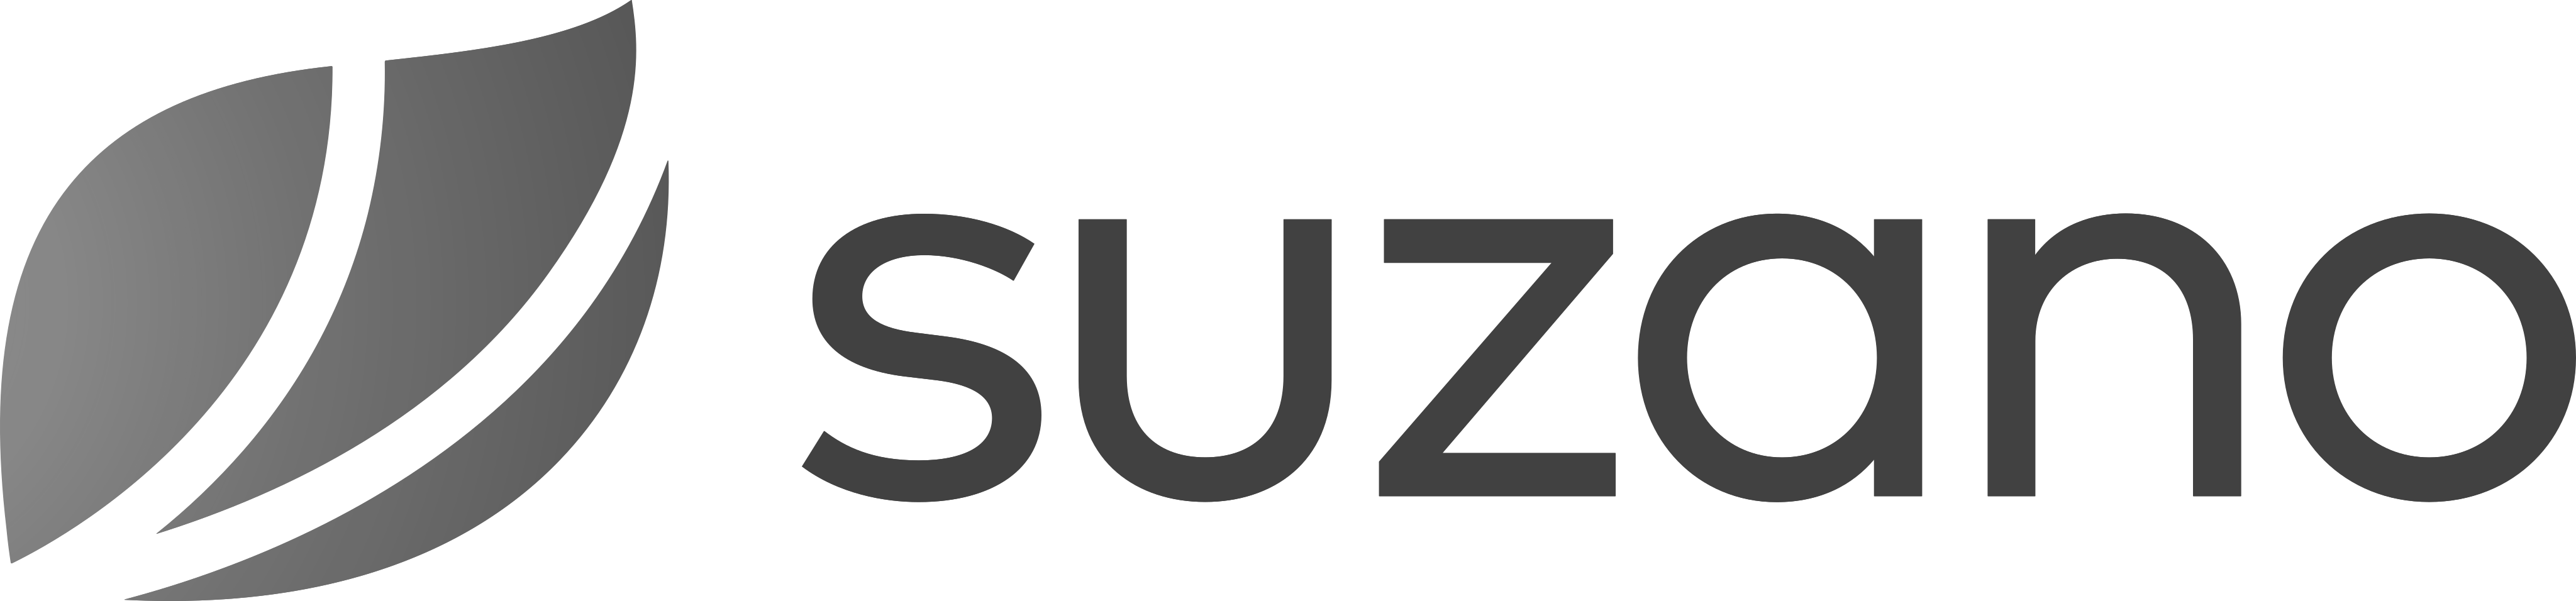 suzano-logo-pb